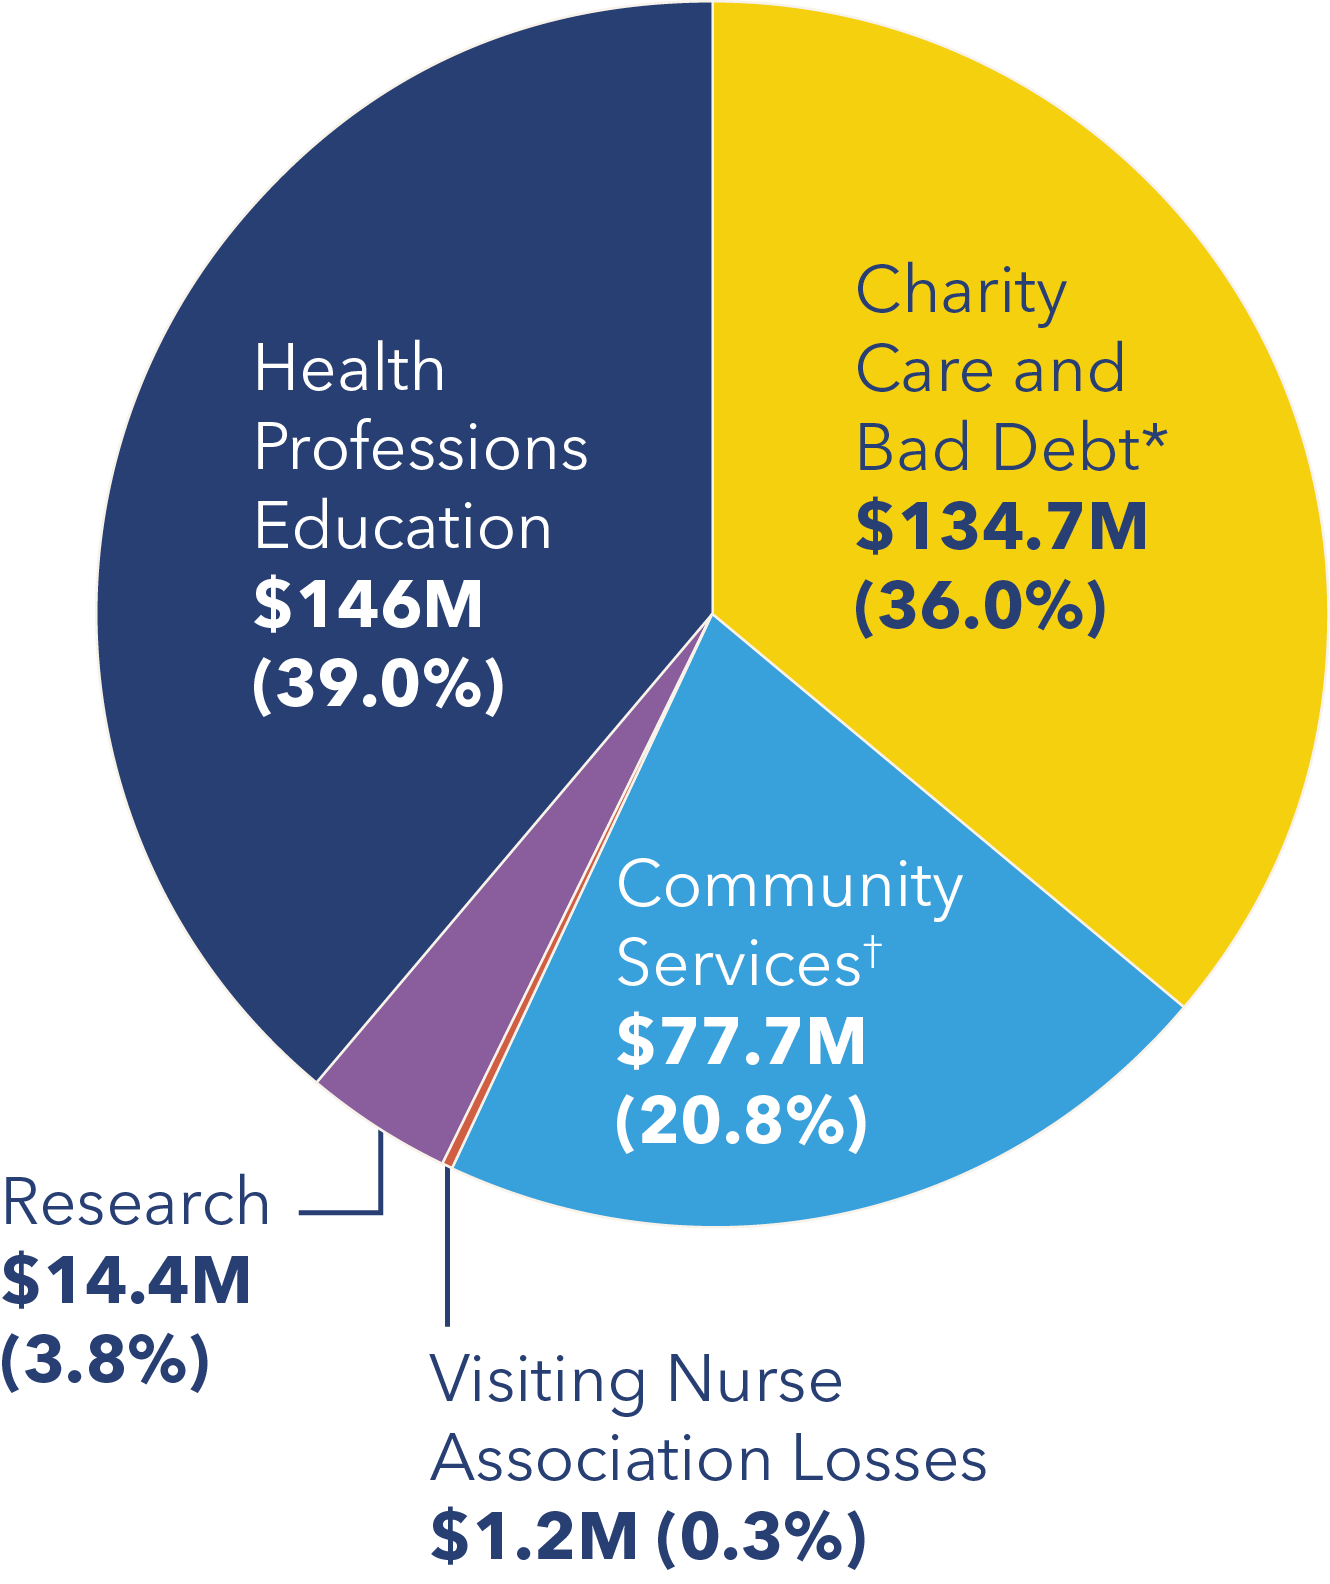 卫生专业教育39%，研究14.4%，社区服务20.8%，慈善护理和坏账36.0%